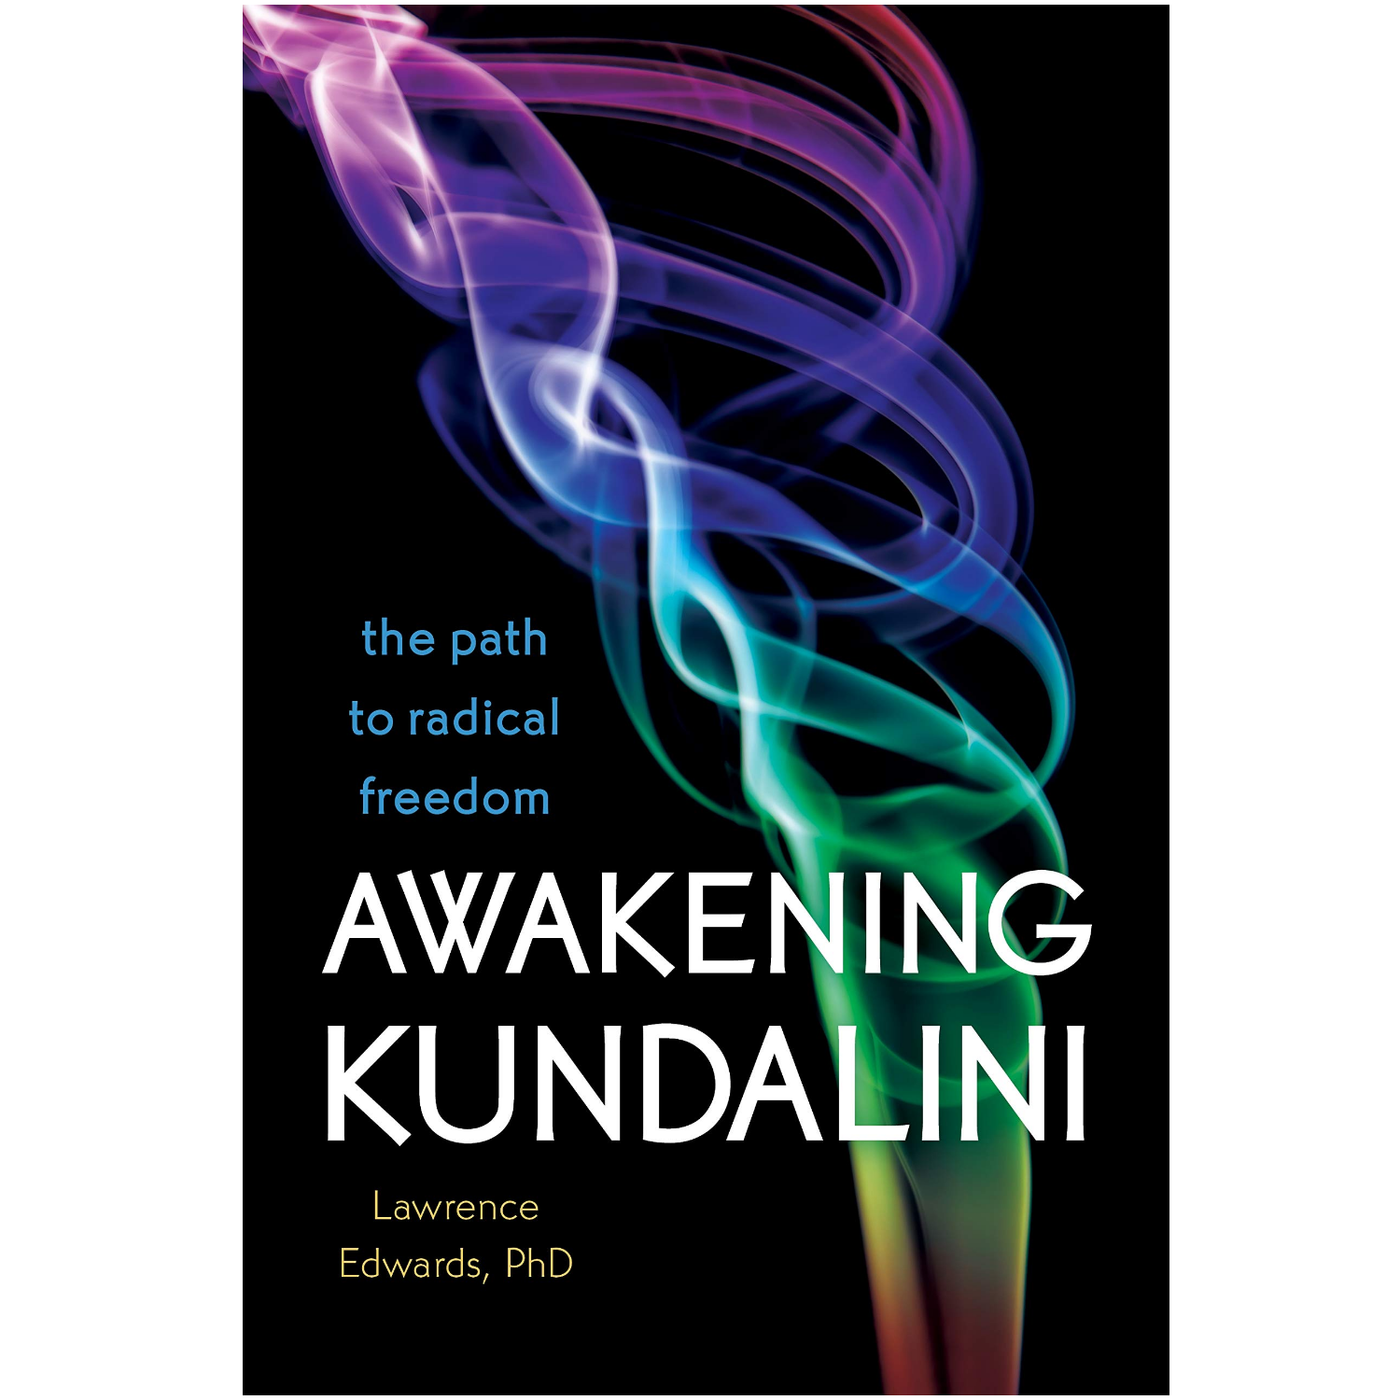 Awakening Kundalini by Lawrence Edwards, PhD